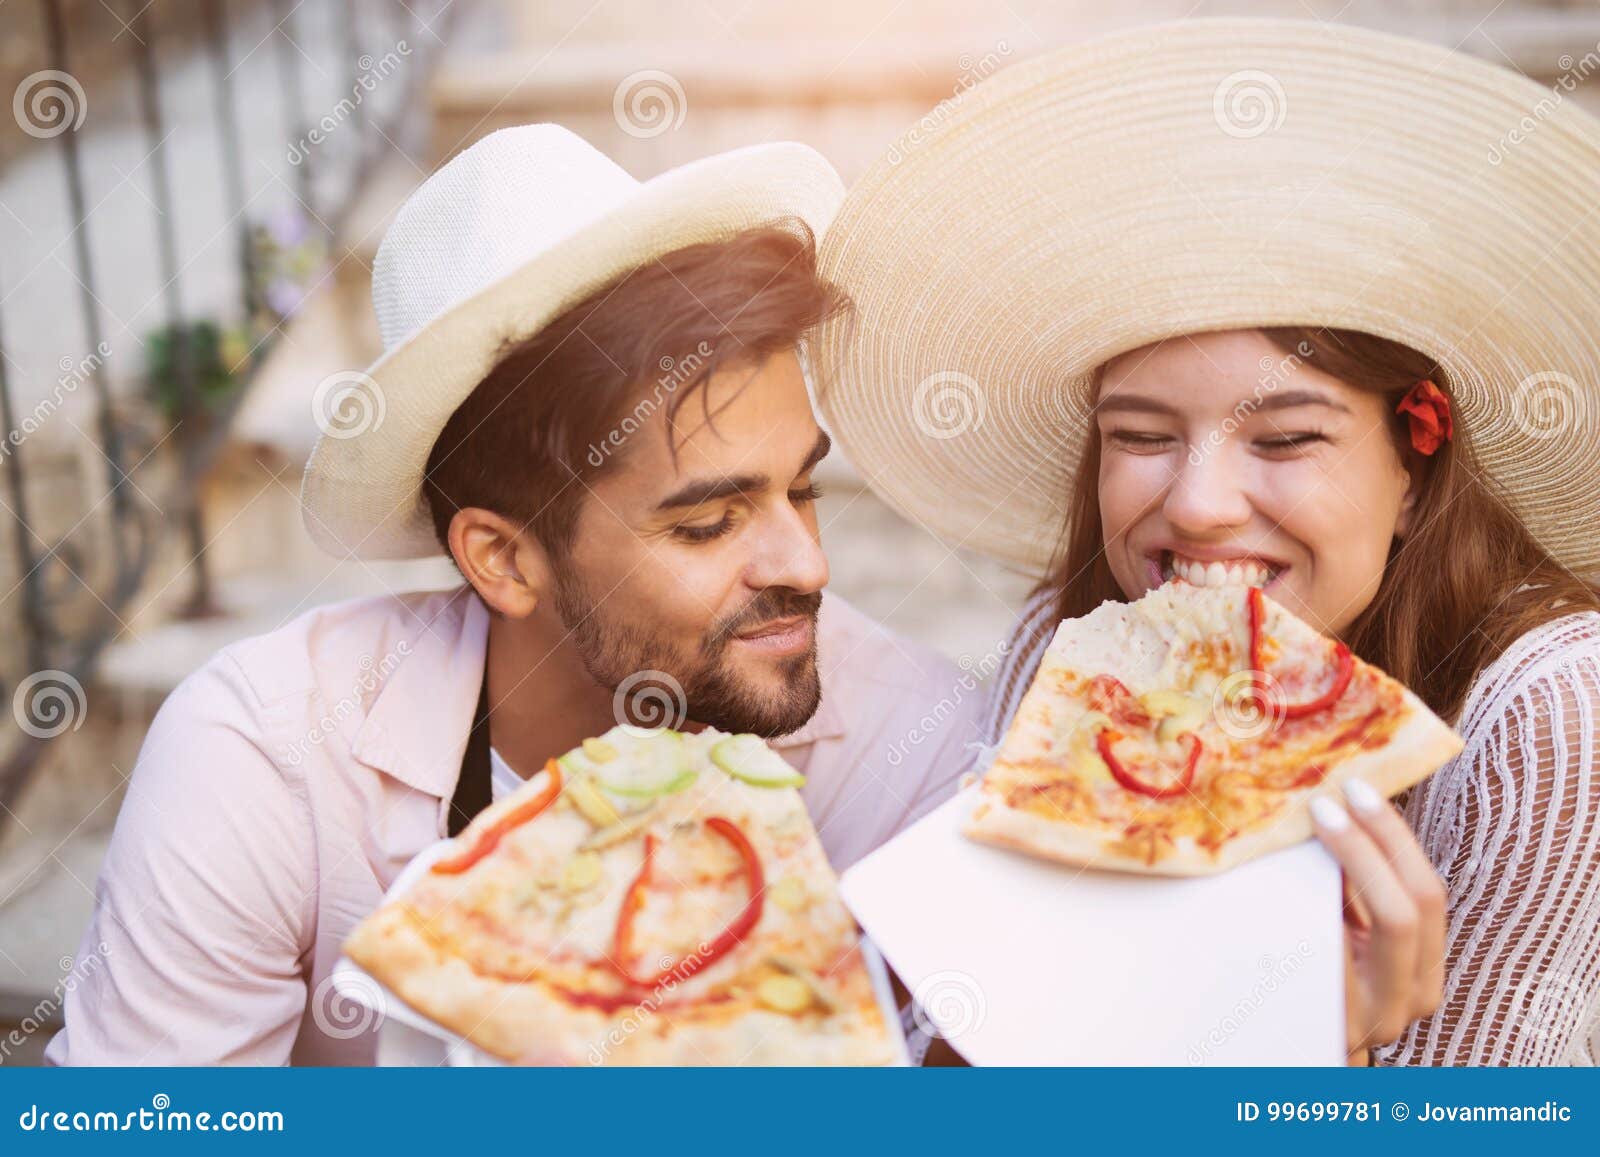 фотосессия пары с пиццей фото 60